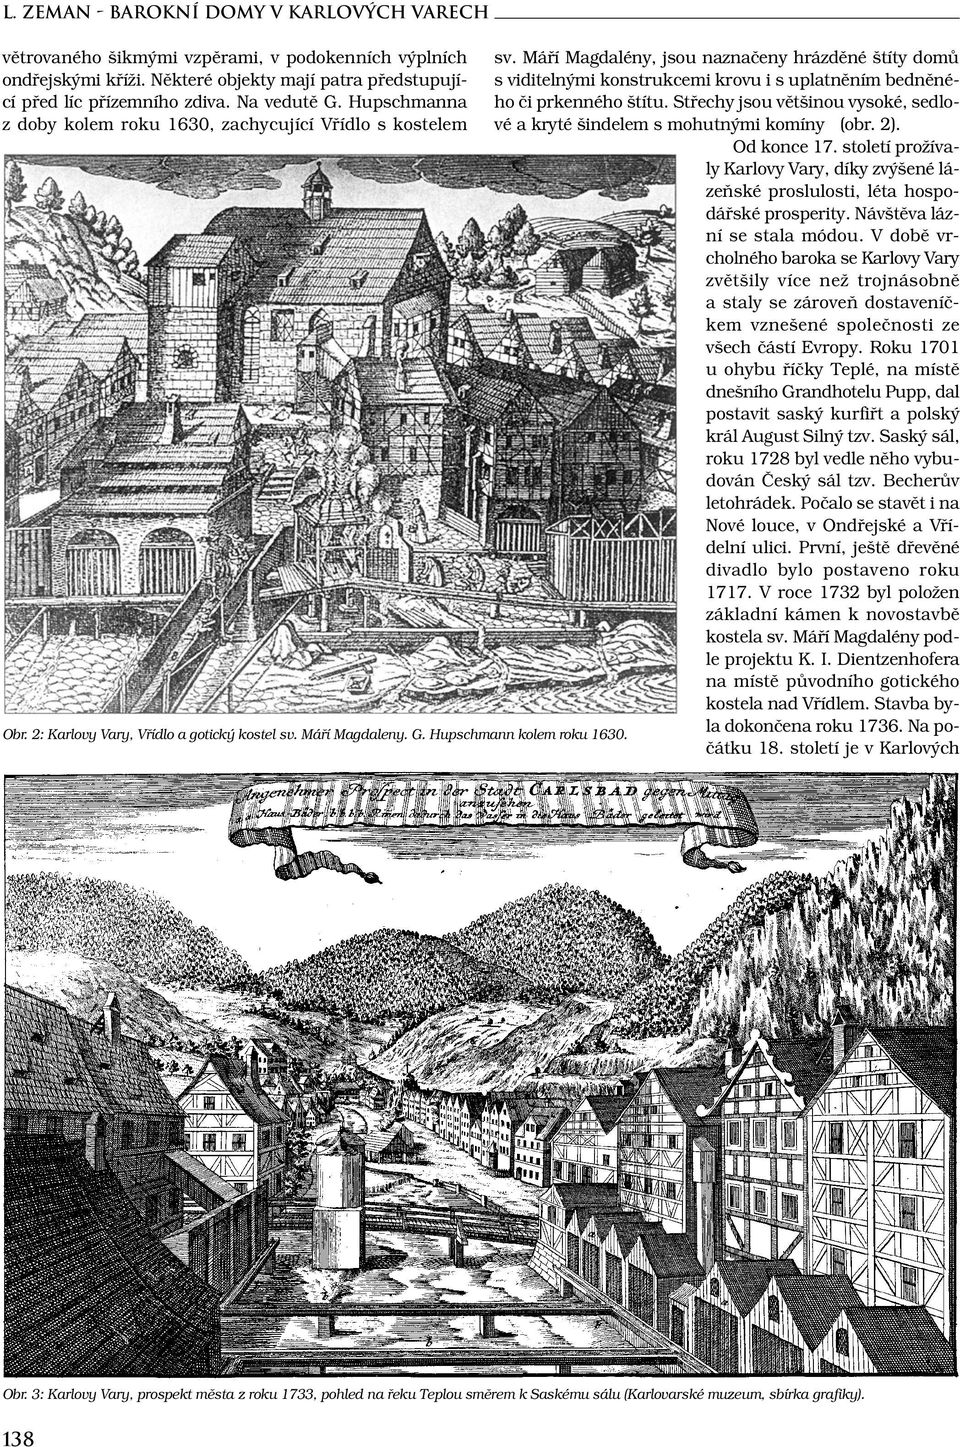 Máří Magdaleny. G. Hupschmann kolem roku 1630. sv. Máří Magdalény, jsou naznačeny hrázděné štíty domů s viditelnými konstrukcemi krovu i s uplatněním bedněného či prkenného štítu.